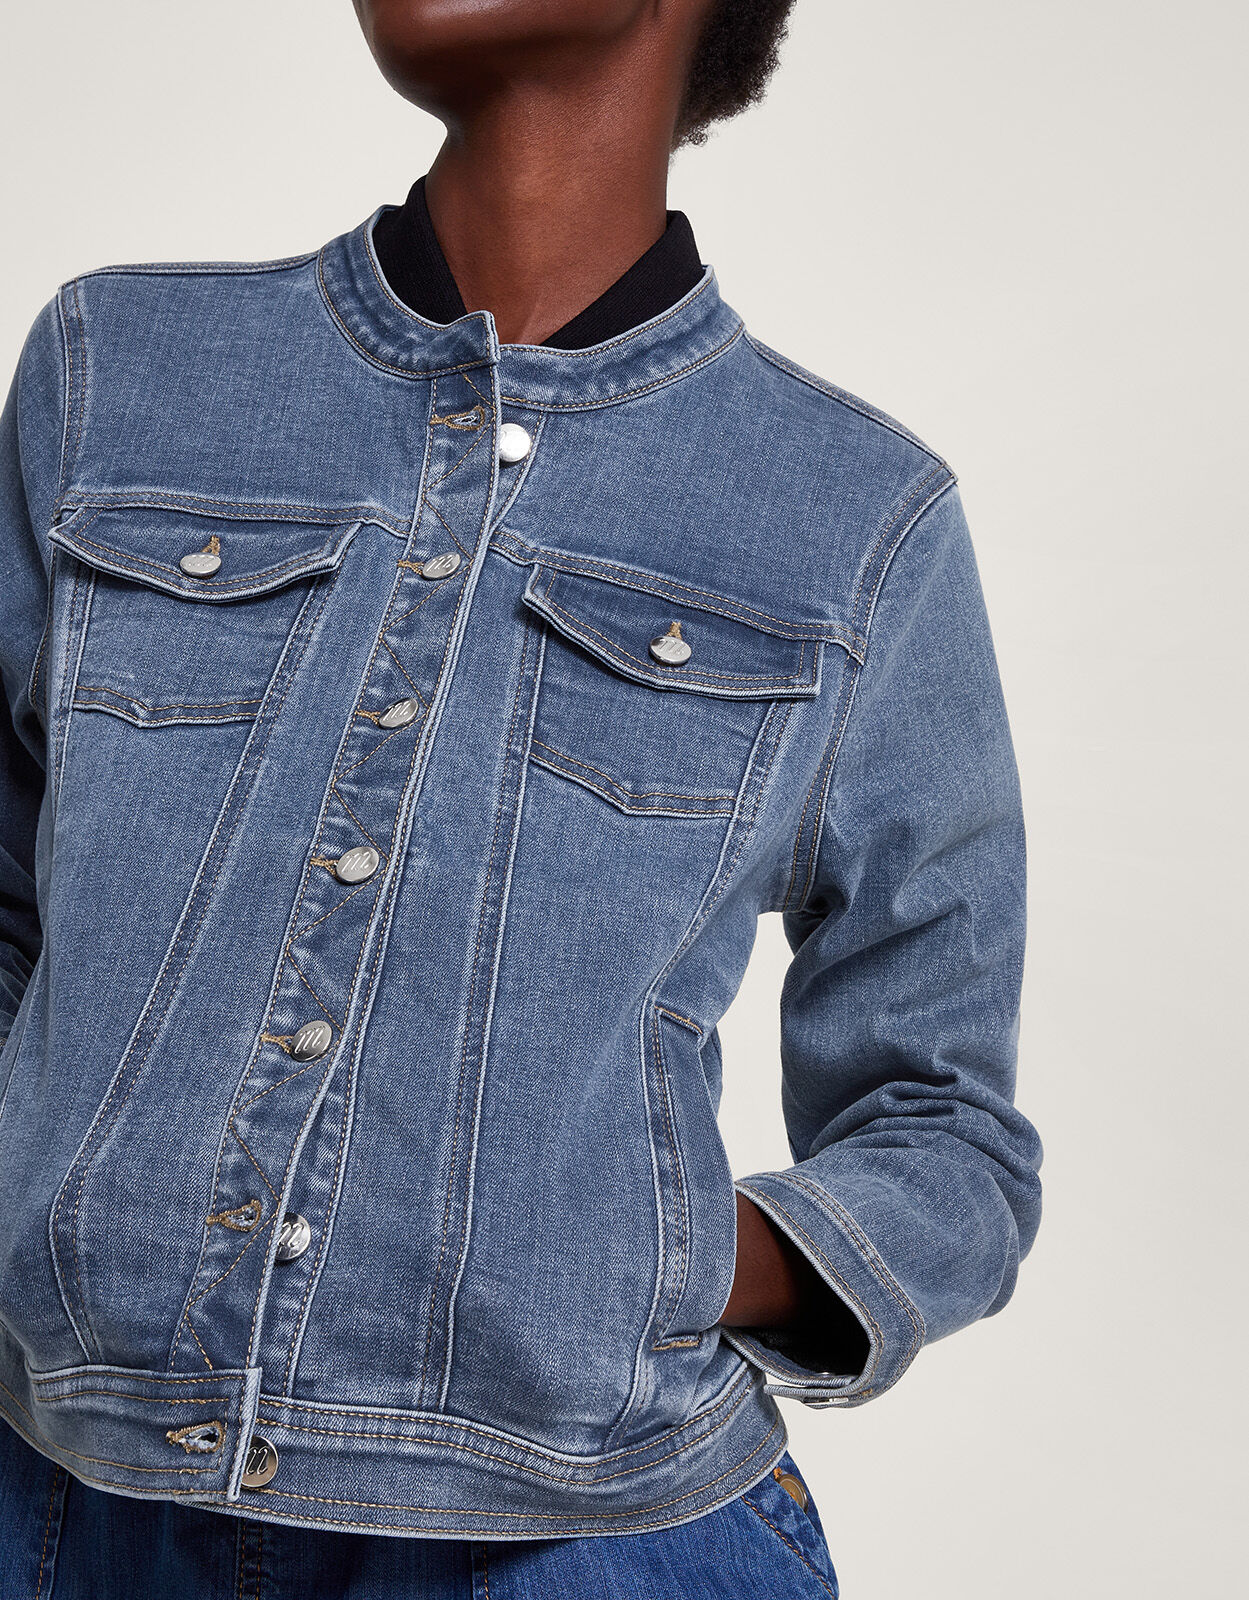 blue jean jackets: Women's Clothing | Dillard's